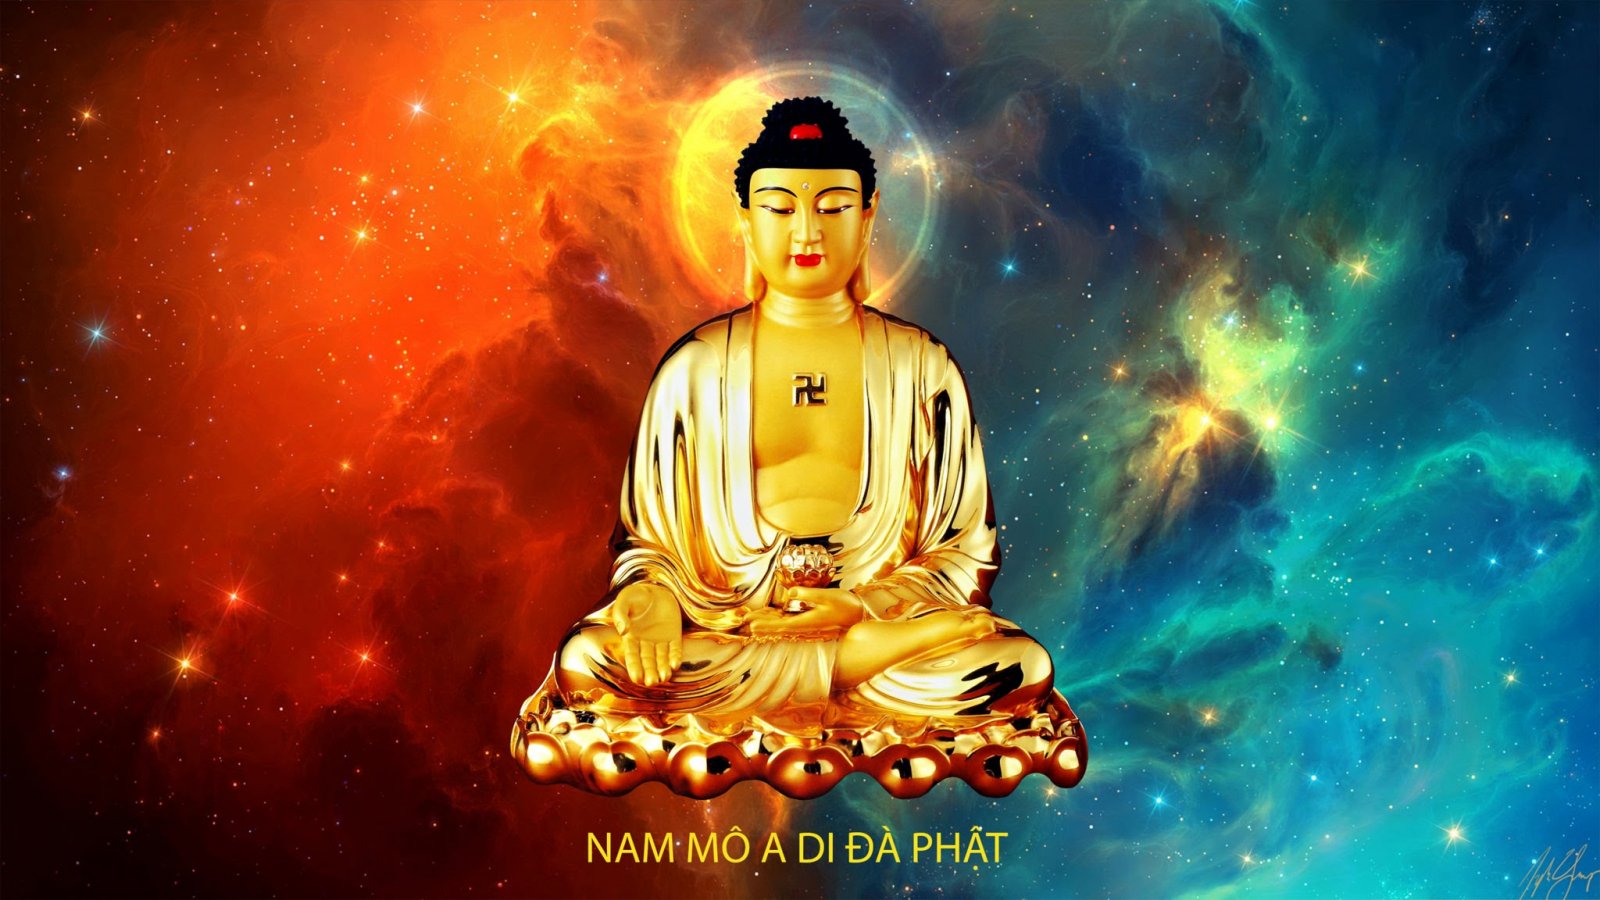 Đạo sư A Di Đà Phật: Chúa Tăng A Di Đà Phật đã để lại đức tính cao cả và sự giảng dạy thông minh mà chúng ta có thể học tập trong đời sống hàng ngày của chúng ta. Hãy tìm hiểu thêm về đại lão này với bức ảnh này!